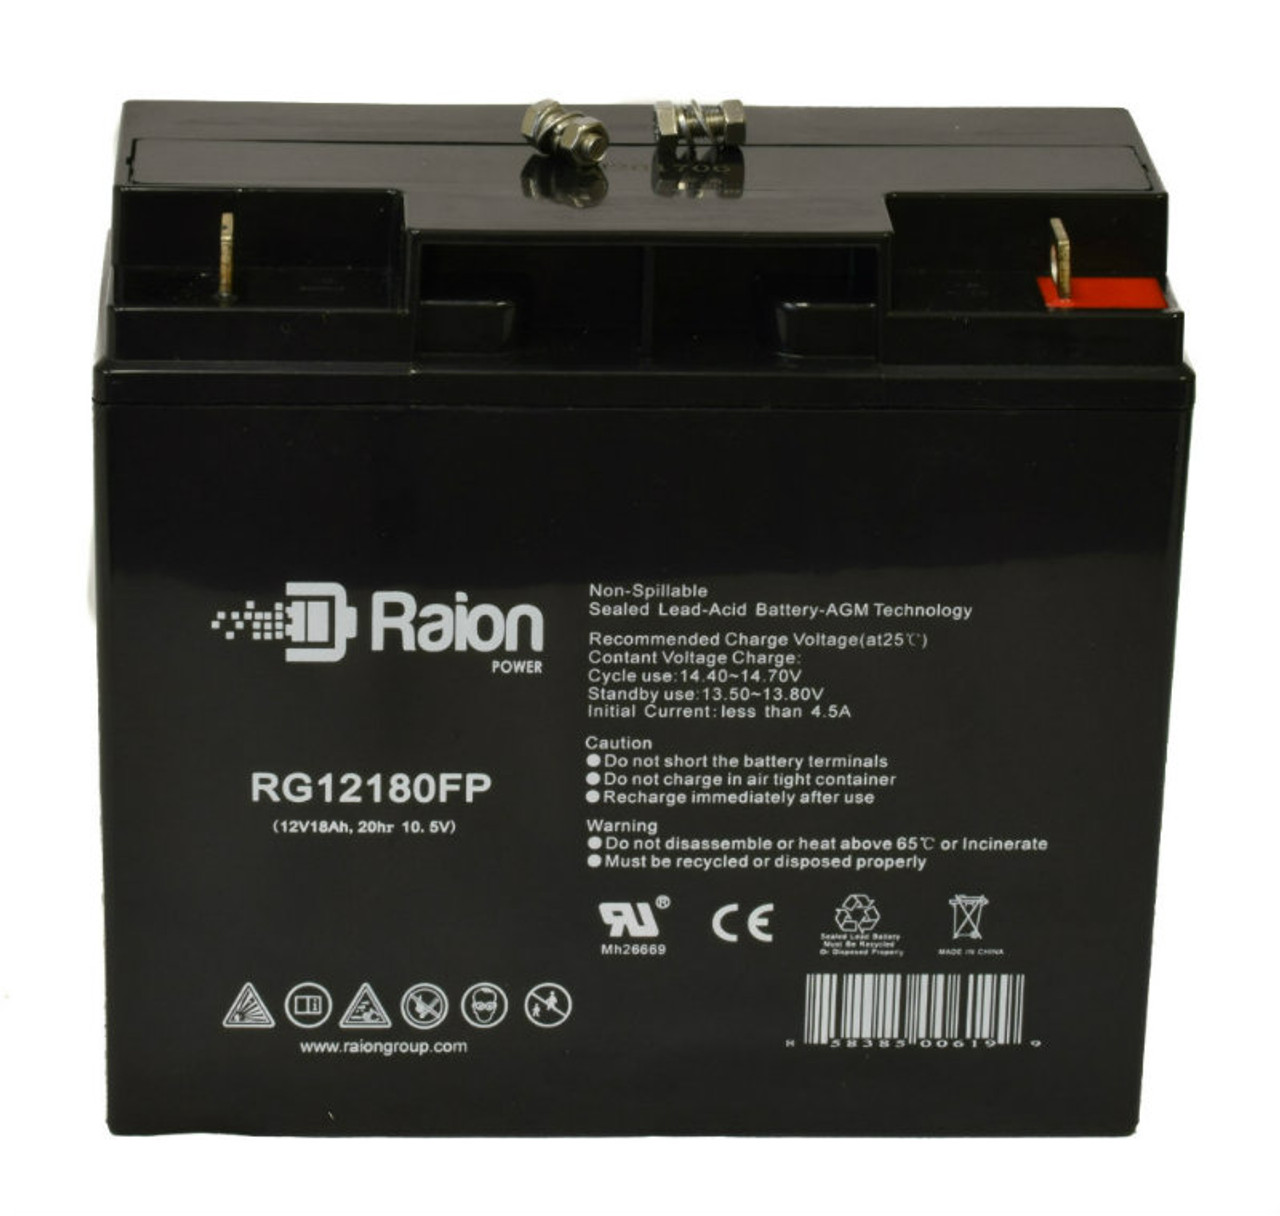 Raion Power RG12180FP 12V 18Ah Lead Acid Battery for SES BT20-12